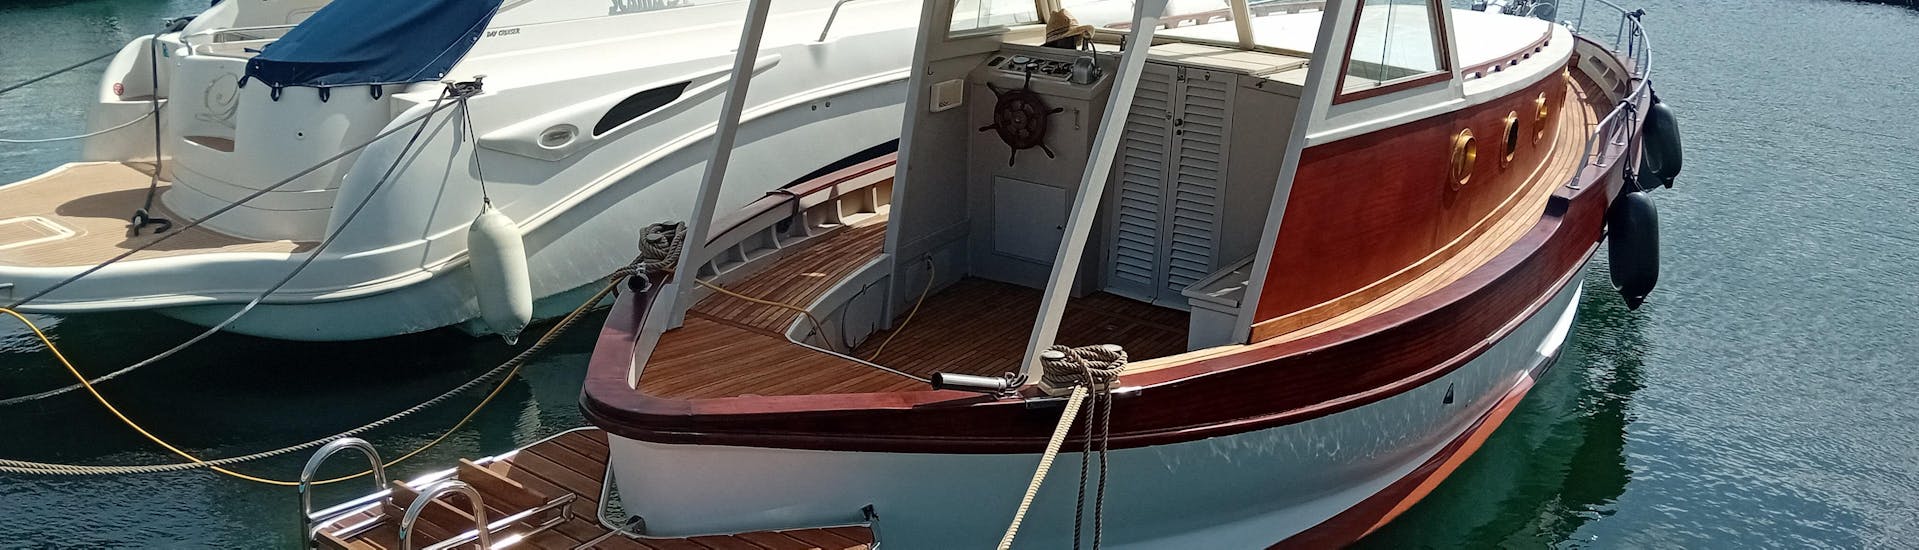 La barca usata da Mare Aperto Cefalù durante le gite.